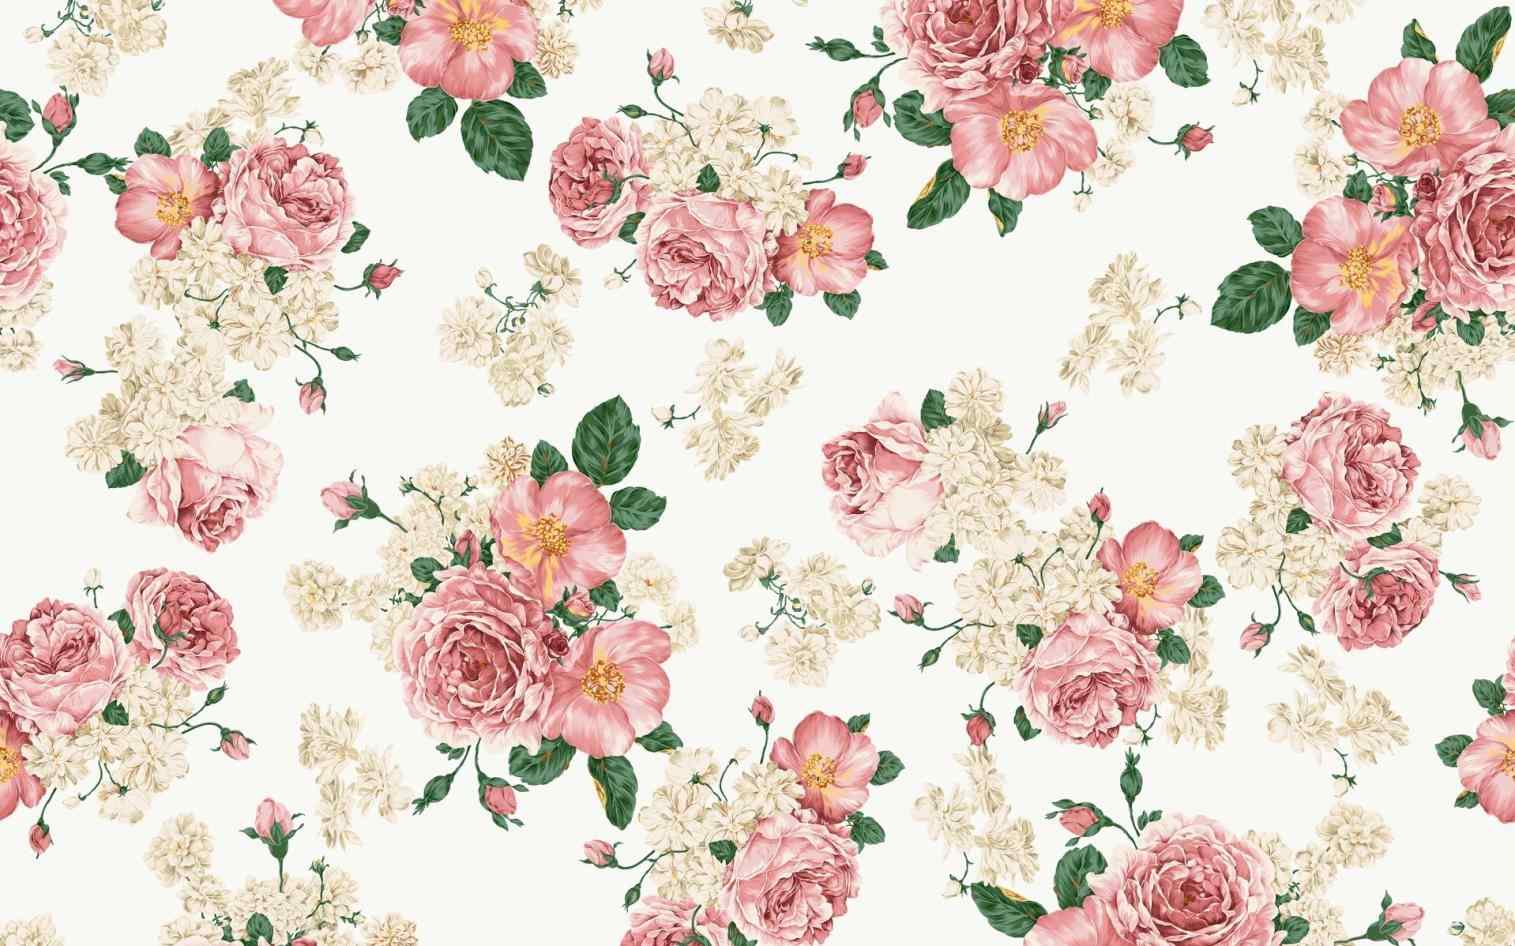 Floral gaya floral vintage flower backgrounds tumblr gaya wallpapers